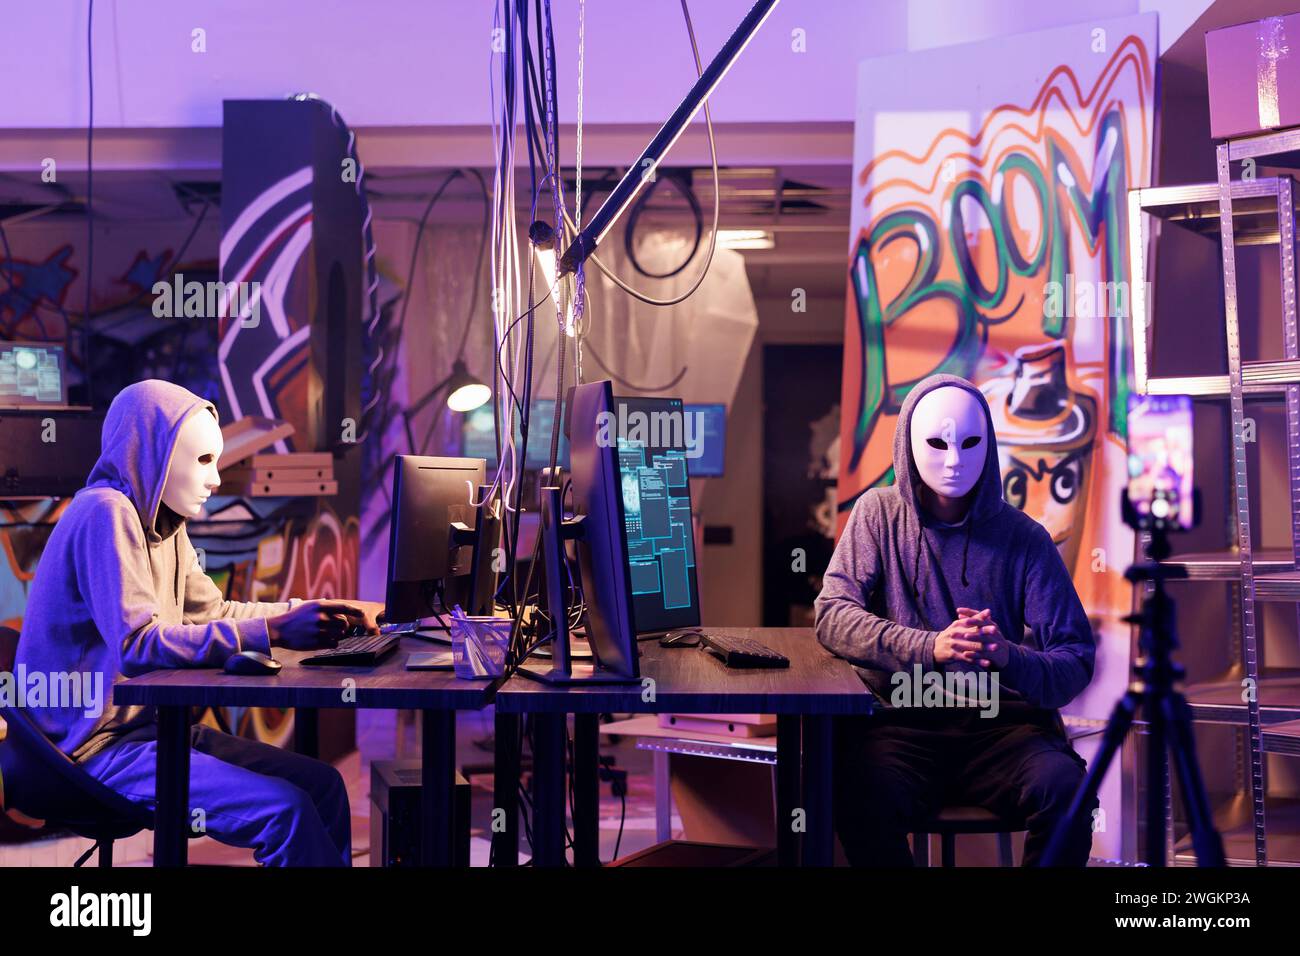 Internetbetrüger in anonymen Masken bedrohen Opfer online auf dem Smartphone. Hacker, die während ihrer Zusammenarbeit in einem verlassenen Lager Videos von Lösegeldnachrichten auf dem Mobiltelefon aufzeichnen Stockfoto